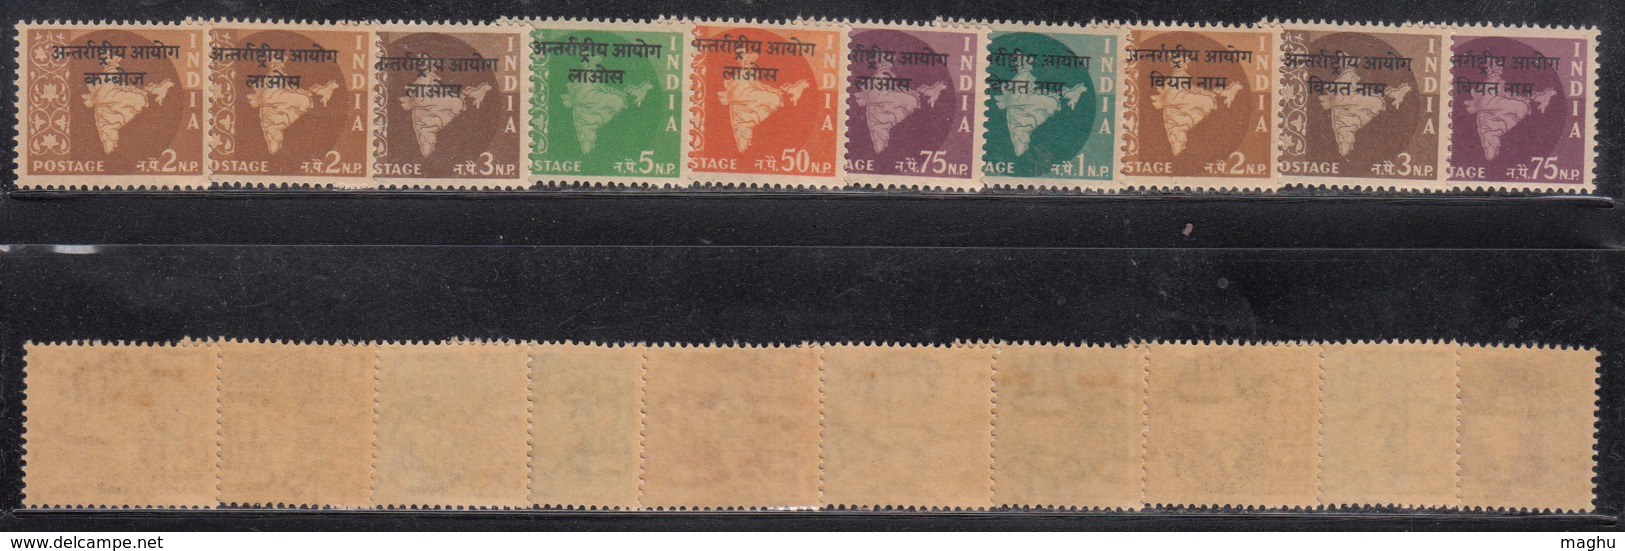 10 Diff., , Oveerprint Of Vietnam, Laos And Combodia On Map Series, Watermark Ashokan, India MNH 1962-1965 - Militärpostmarken